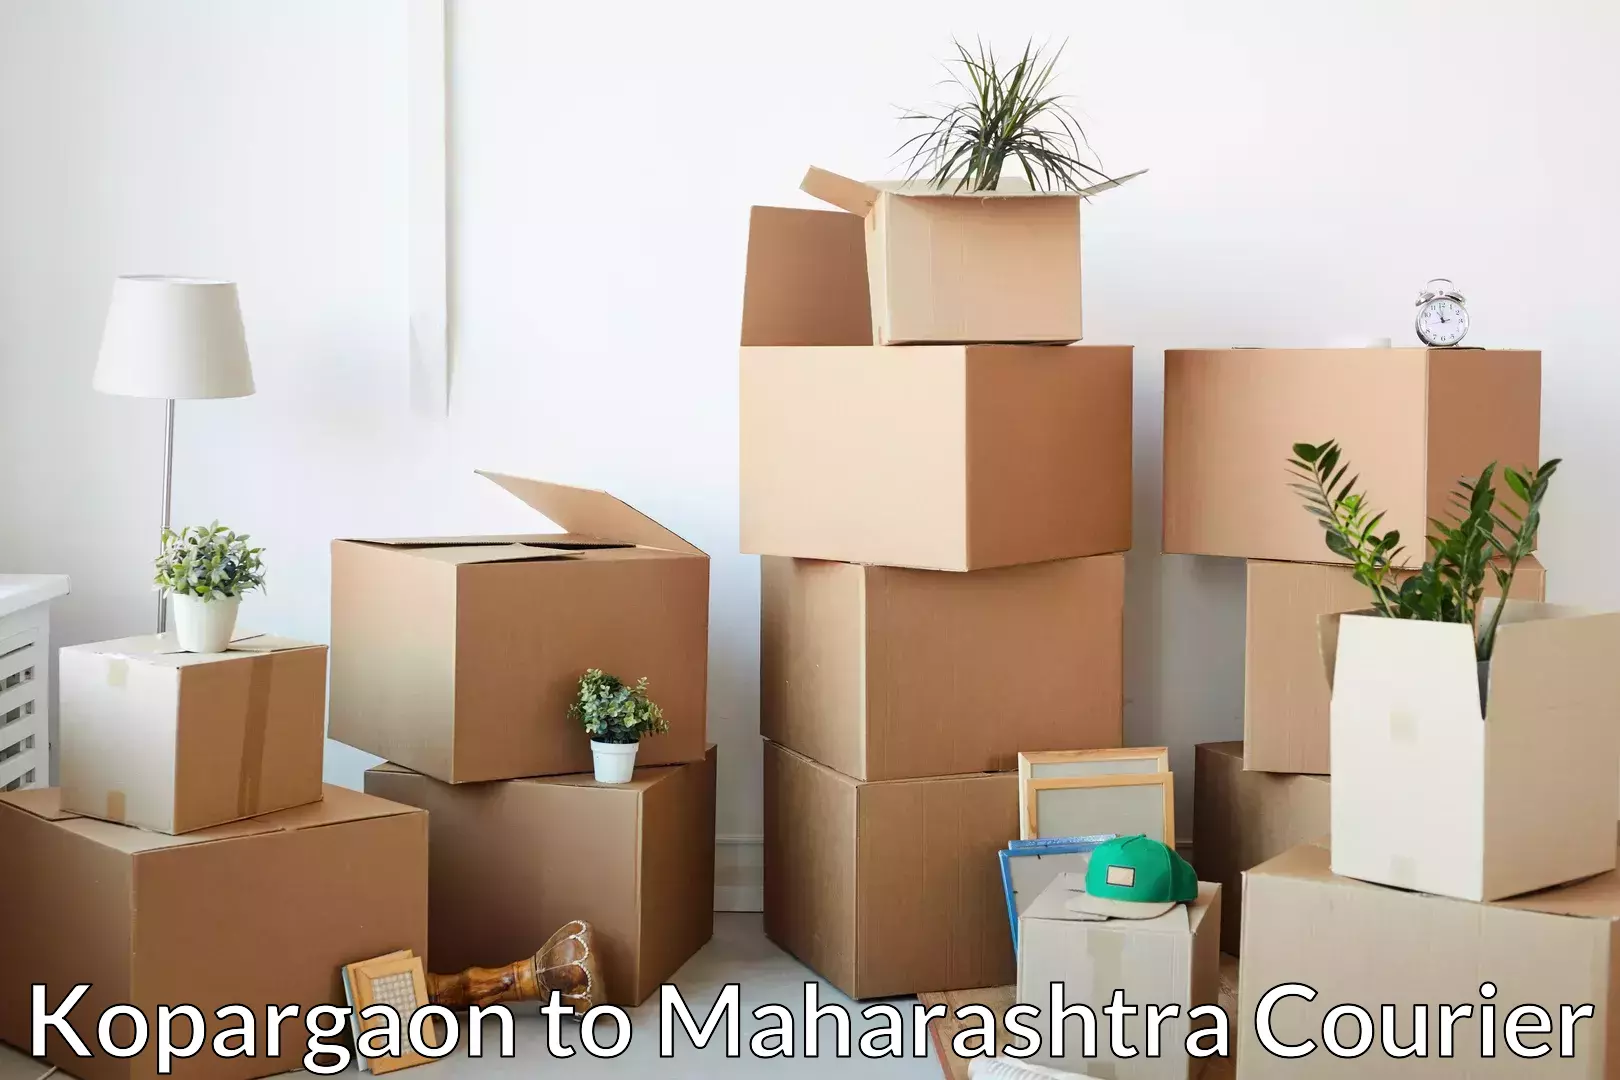 Furniture moving experts Kopargaon to Palghar